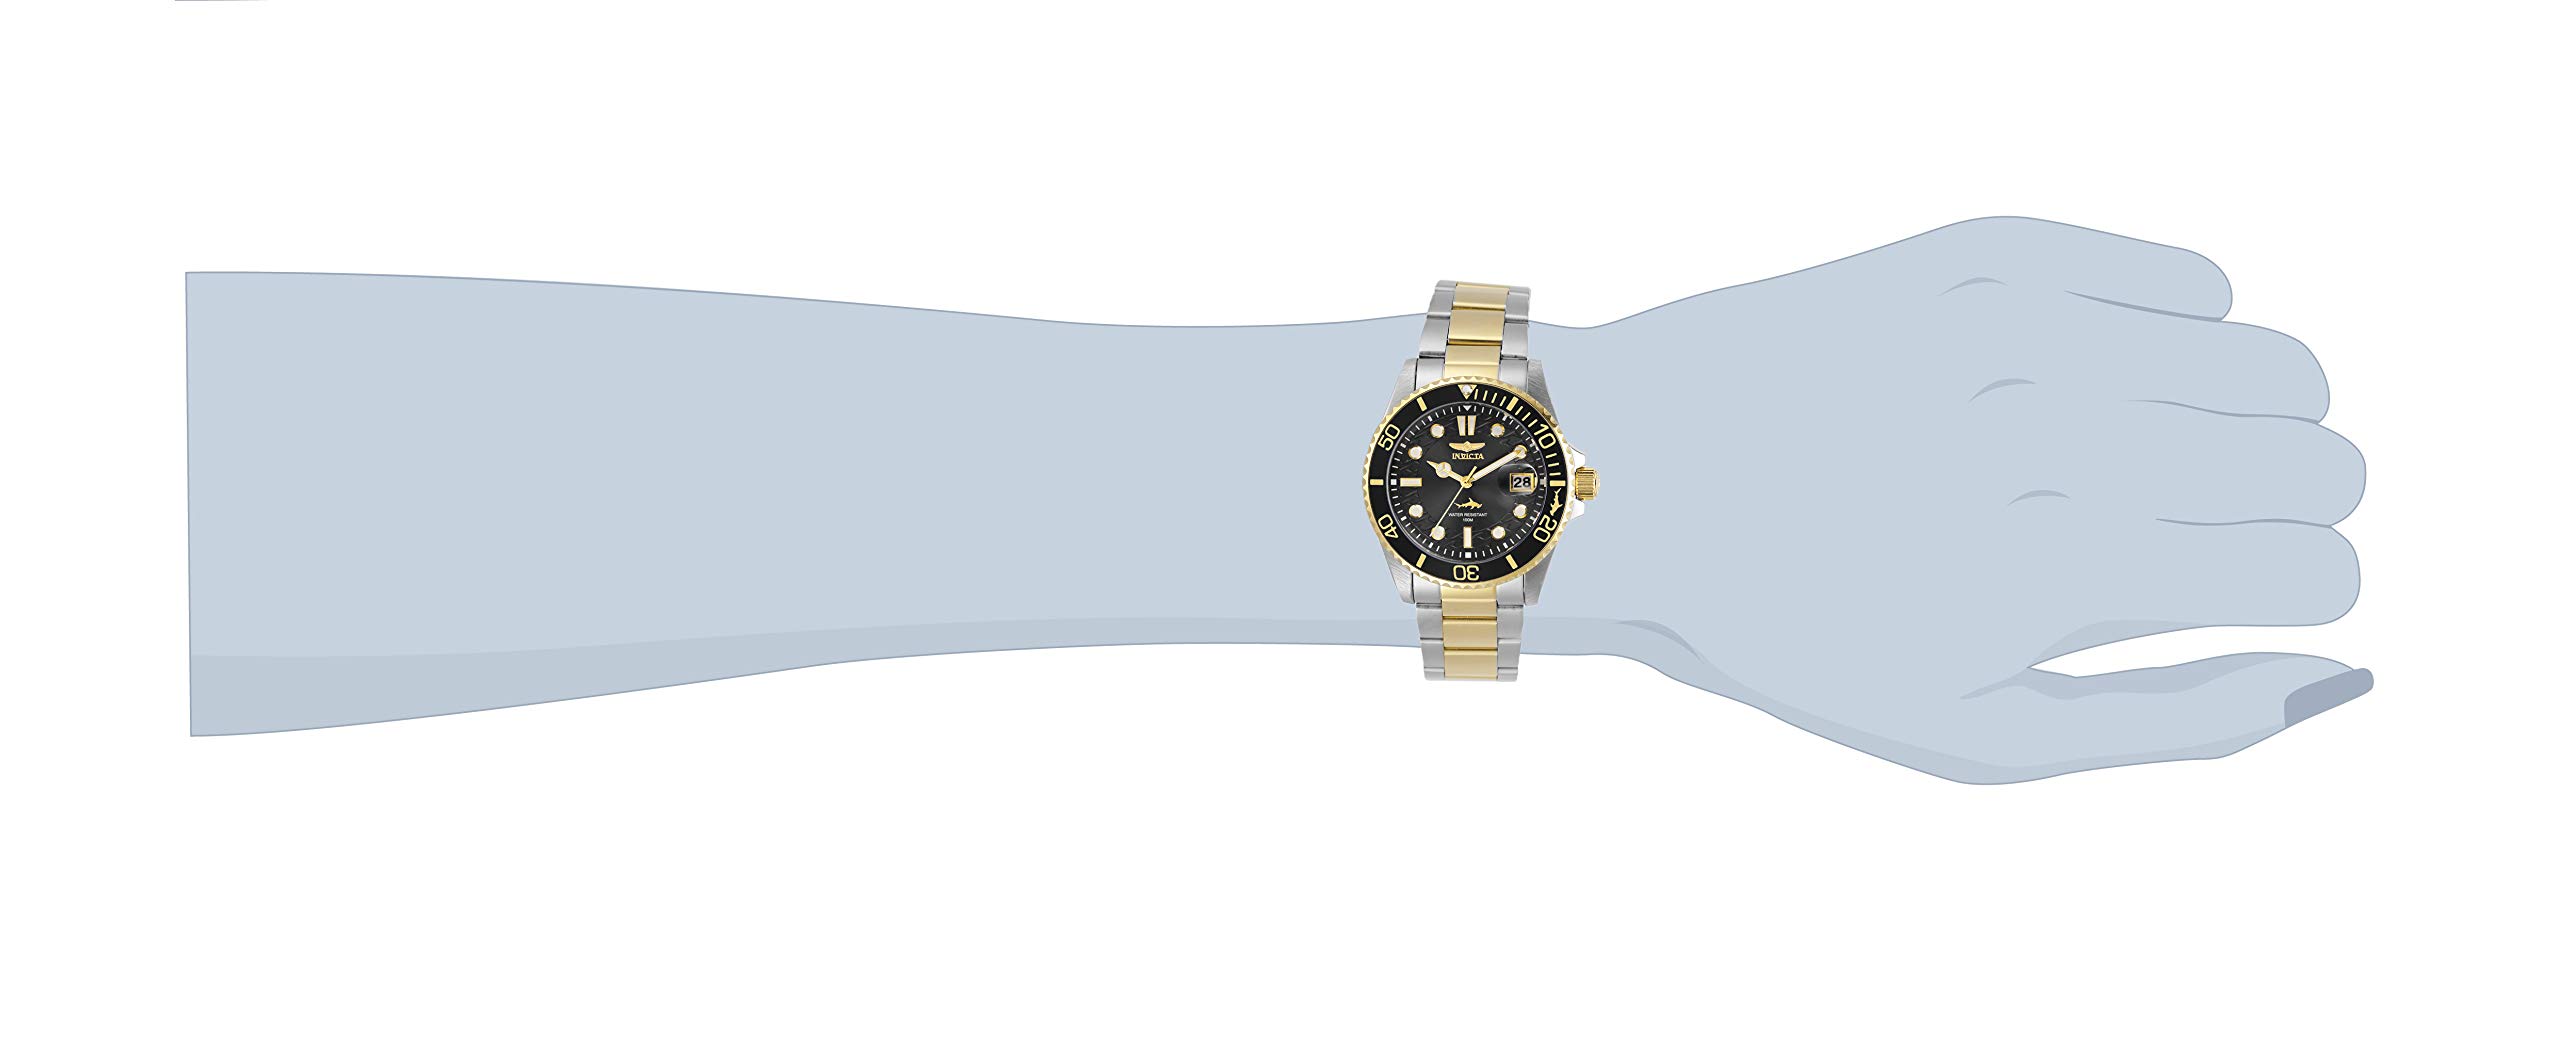 Invicta Women's Pro Diver Quartz Watch, Two Tone, 30483